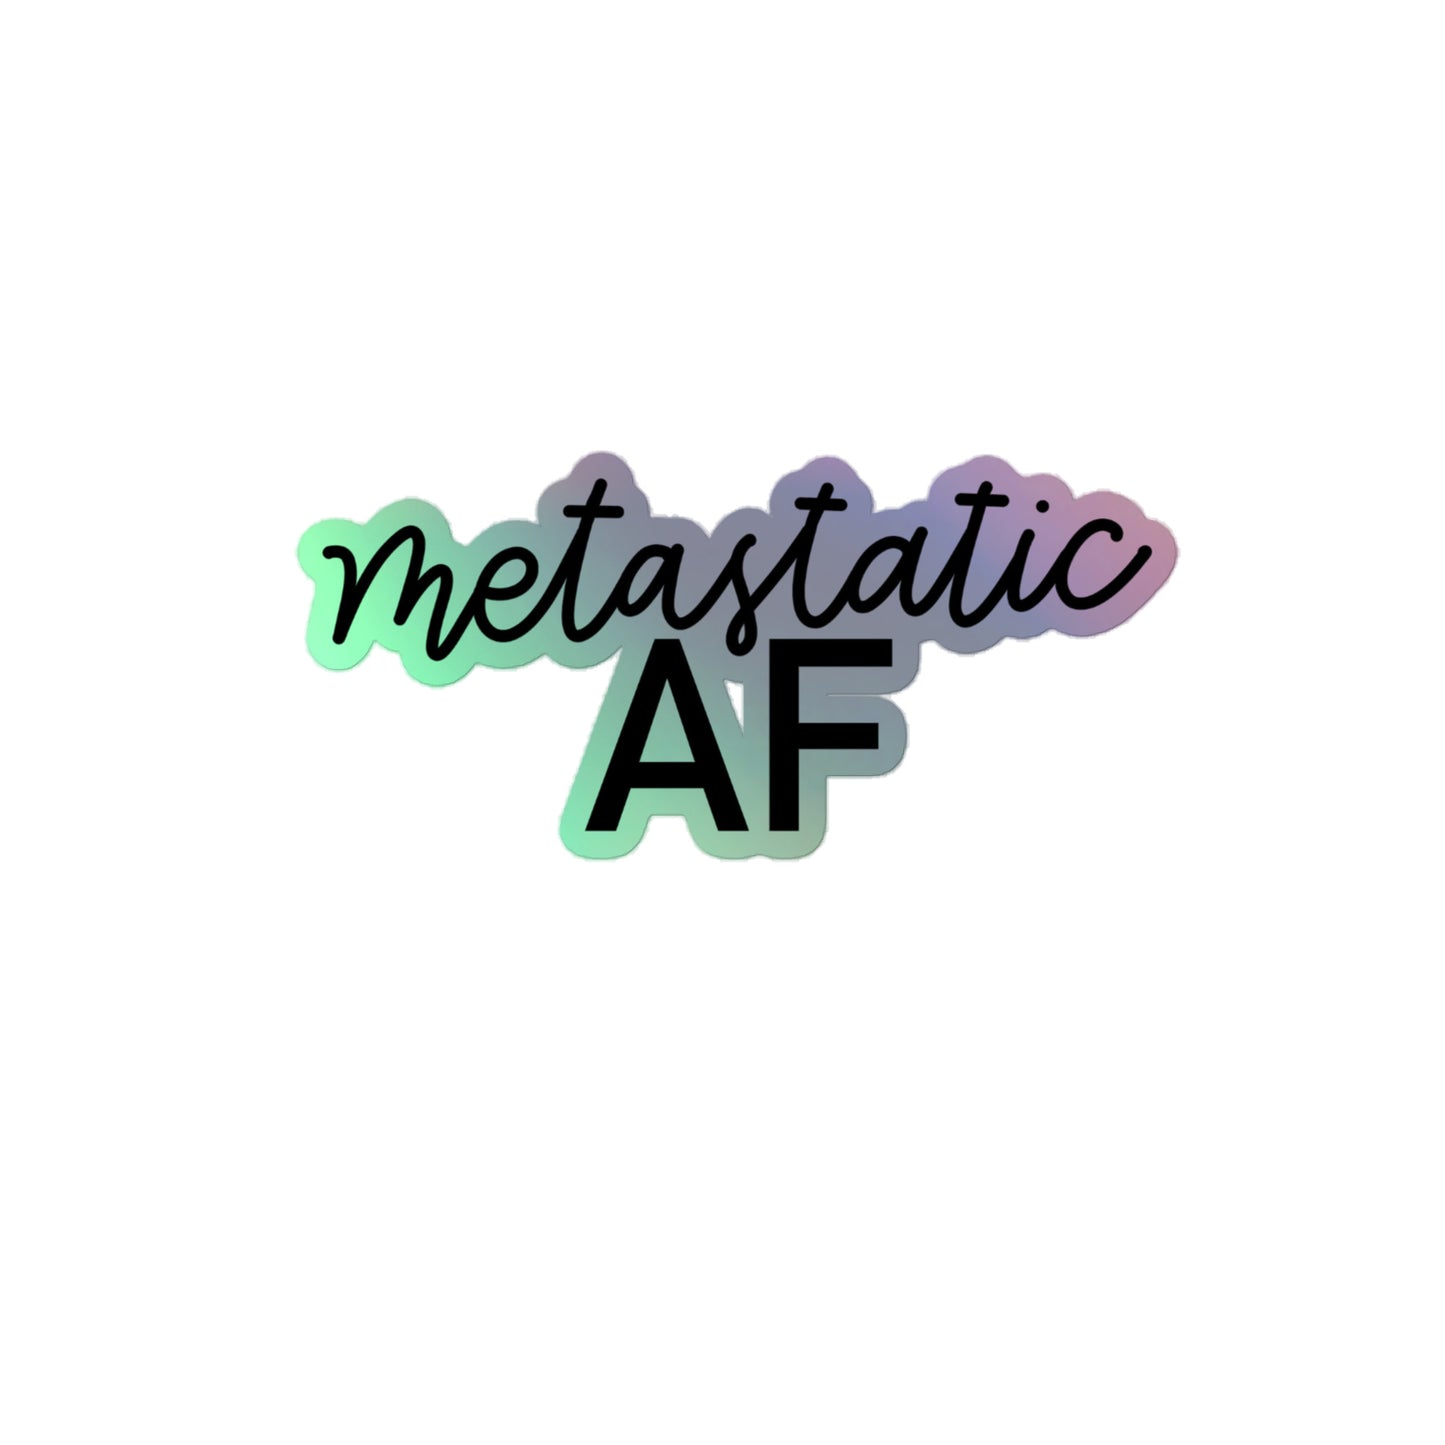 Metastatic AF© Holographic Sticker